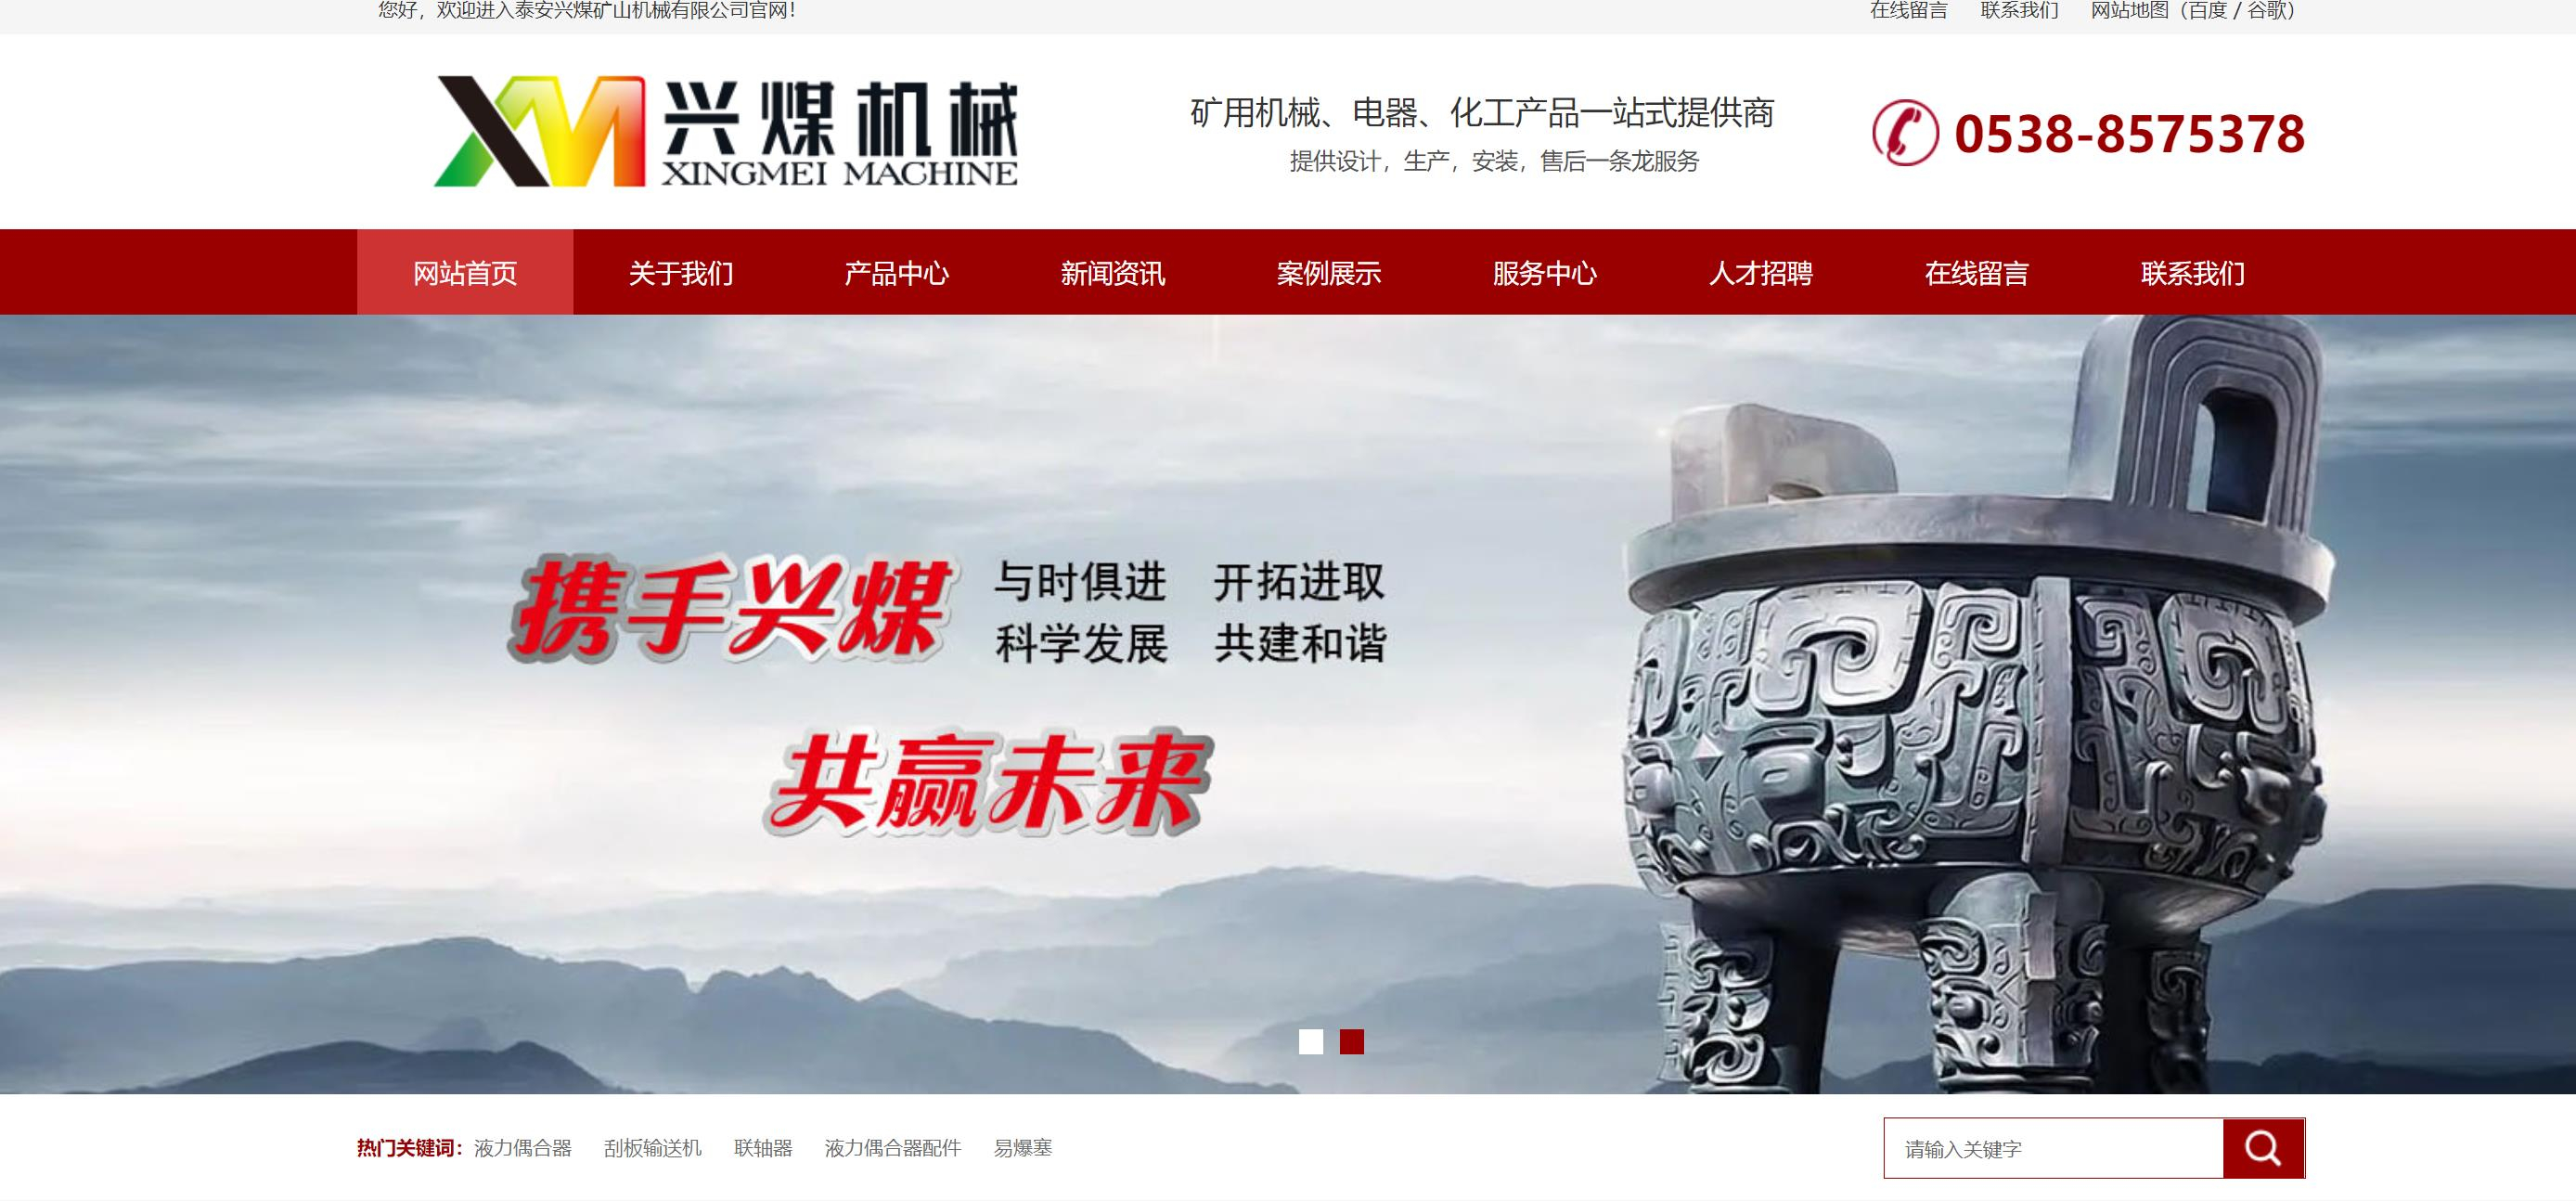 泰安興煤機械網站全新升級改版